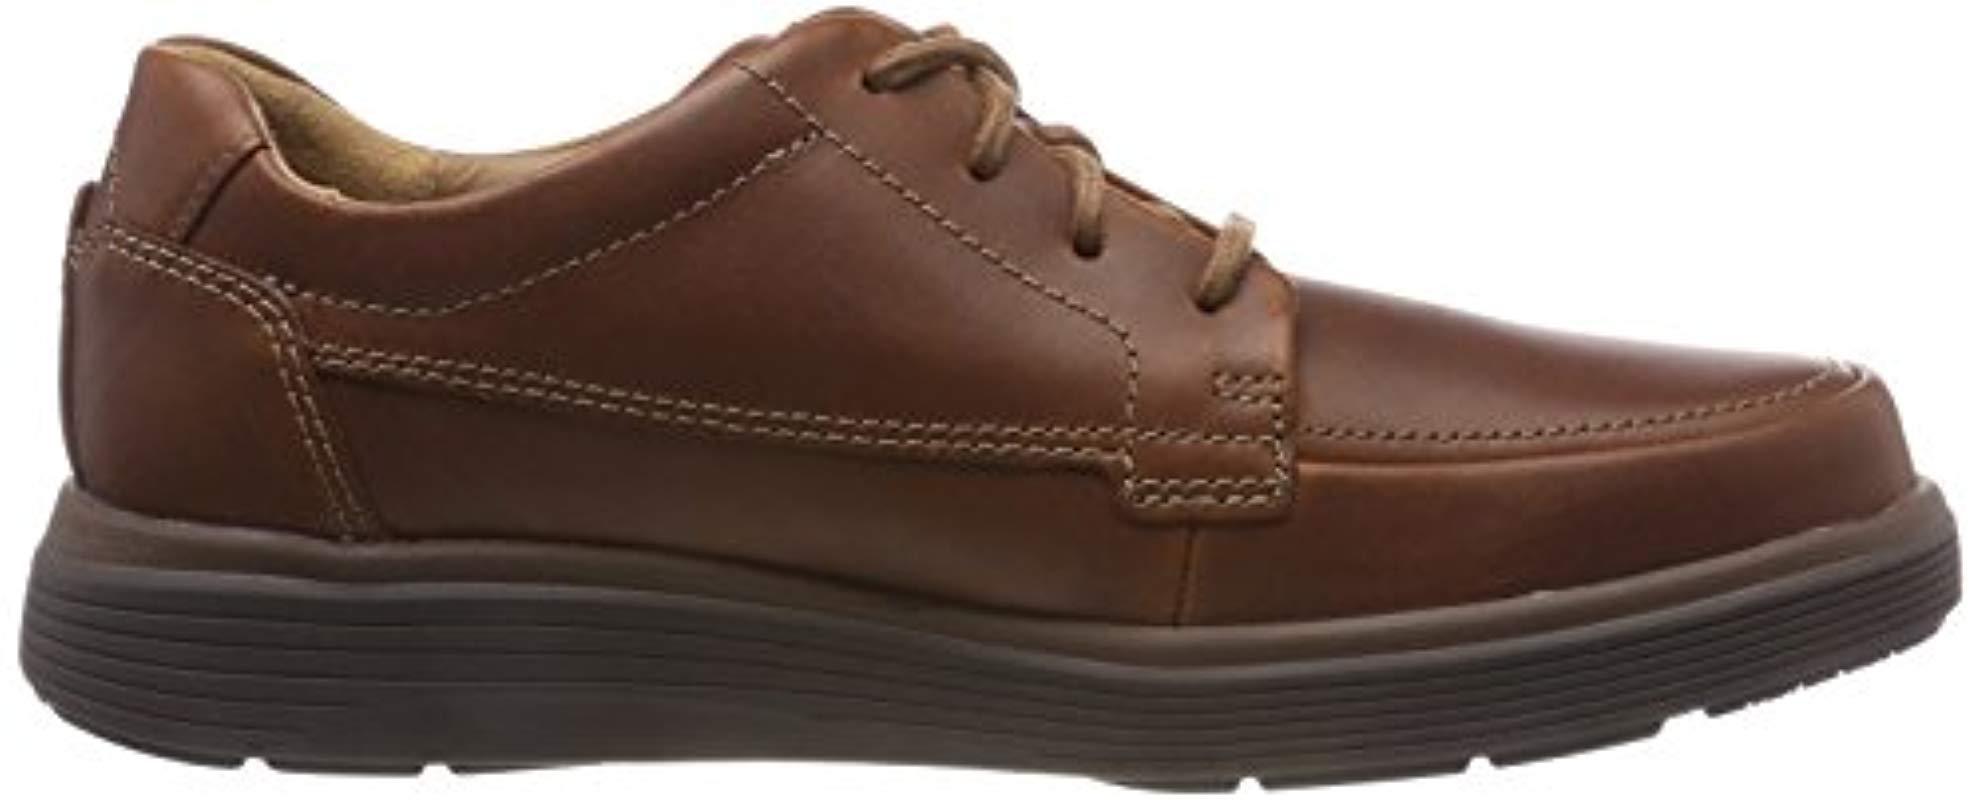 Un Abode Ease Clarks de Cuero de color Marrón para hombre Hombre Zapatos de Zapatos con cordones de Zapatos Derby ahorra un 36 % 